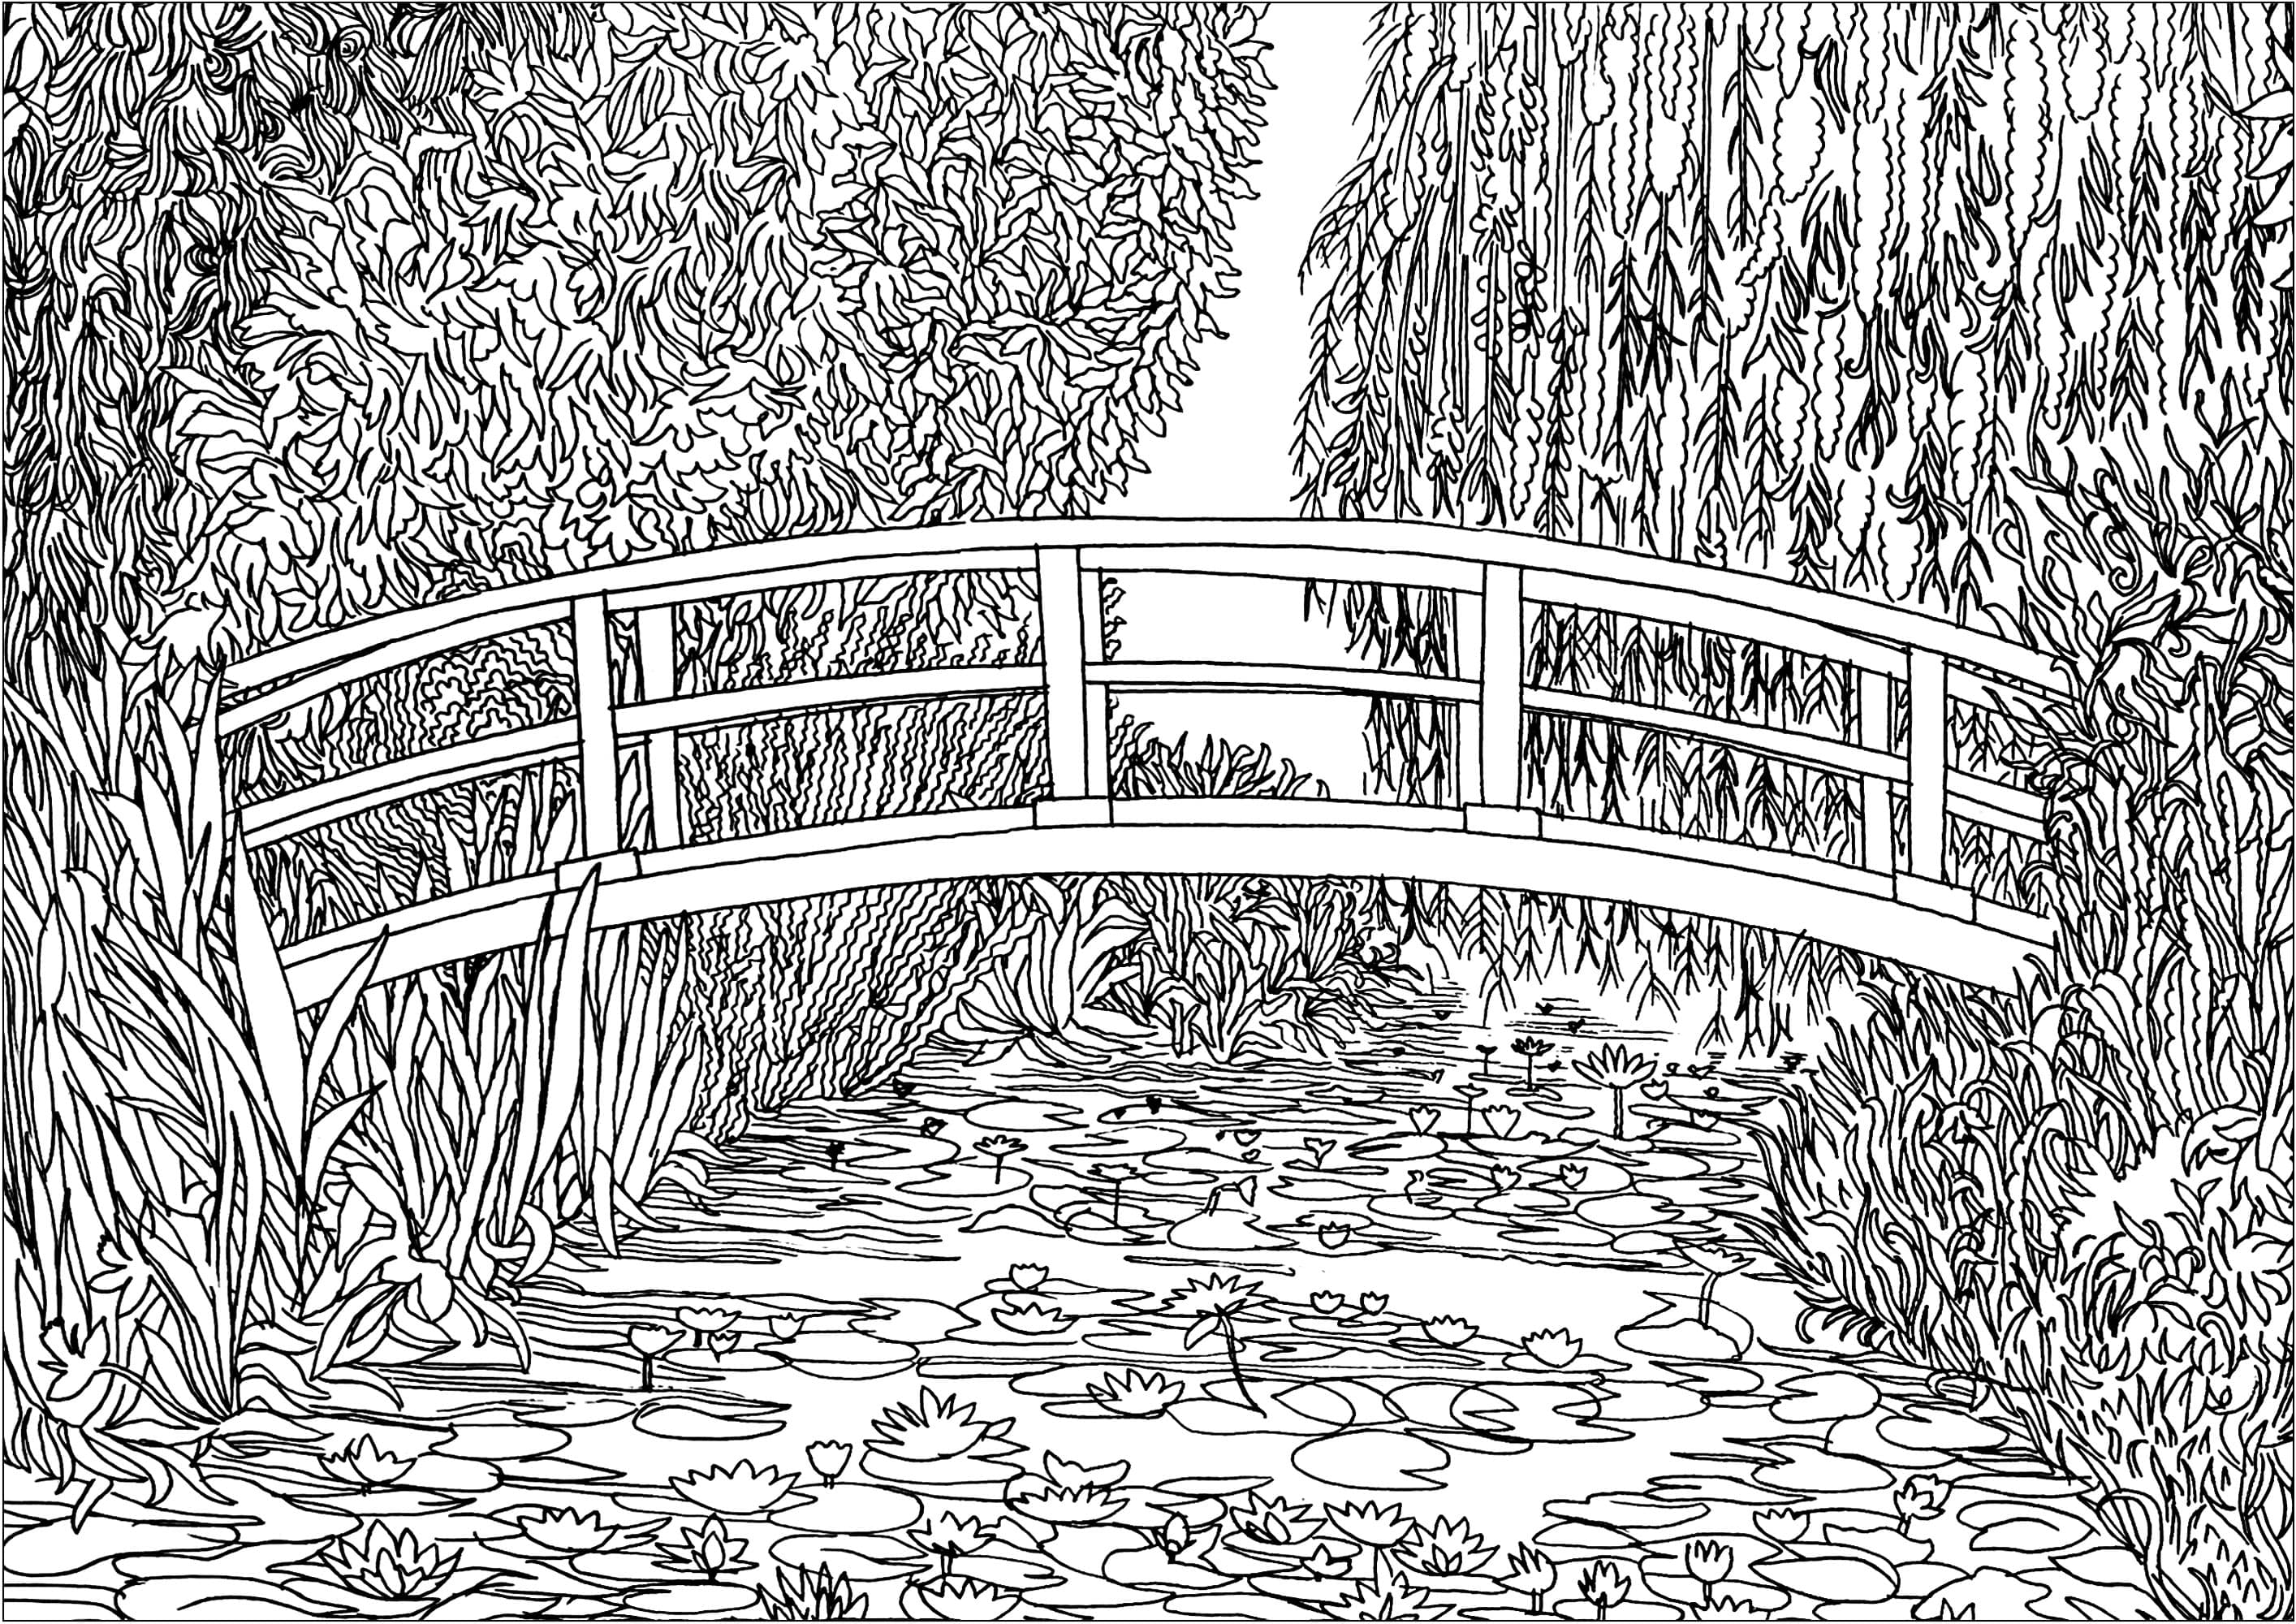 Ausmalbild nach dem Gemälde 'Le bassin aux nymphéas' (1899) von Claude Monet. 1893 kaufte Monet, der nicht nur Maler, sondern auch leidenschaftlicher Gärtner war, ein Grundstück mit einem Teich in der Nähe seines Anwesens in Giverny mit der Absicht, etwas 'zur Freude des Auges und auch für Motive zum Malen' zu bauen. Das Ergebnis war eine Reihe von Gemälden, die diesen herrlichen Seerosenteich darstellten.